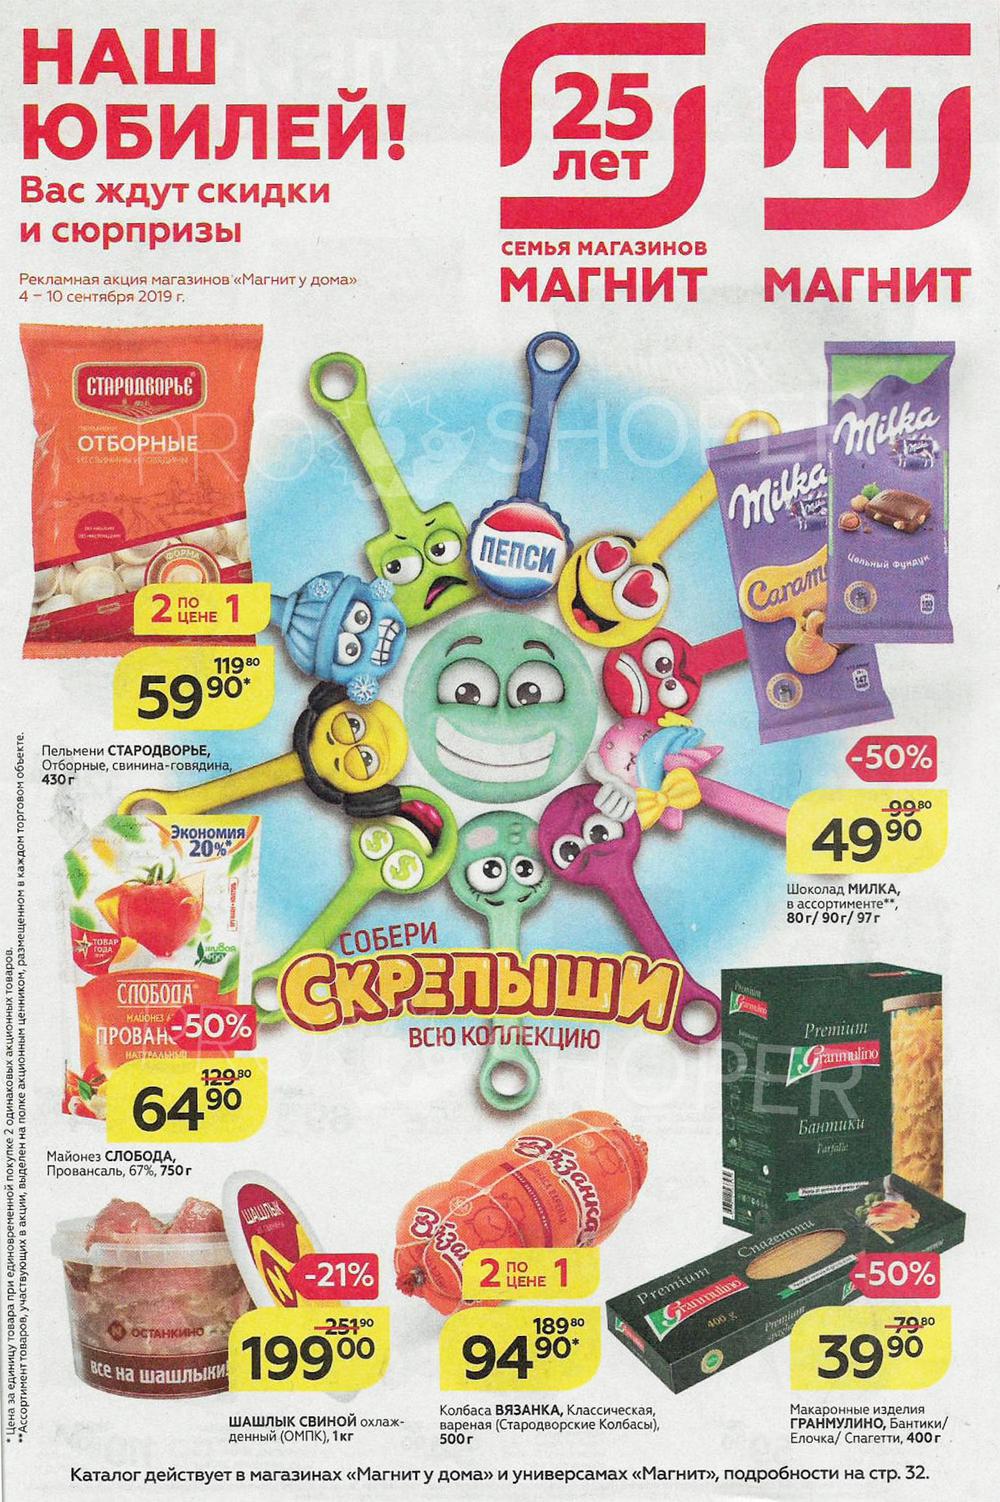 Магнит купить за рубль. Рекламные акции магнит. Акционные товары магнит. Акция в магазине. Акция магнит крепыши.